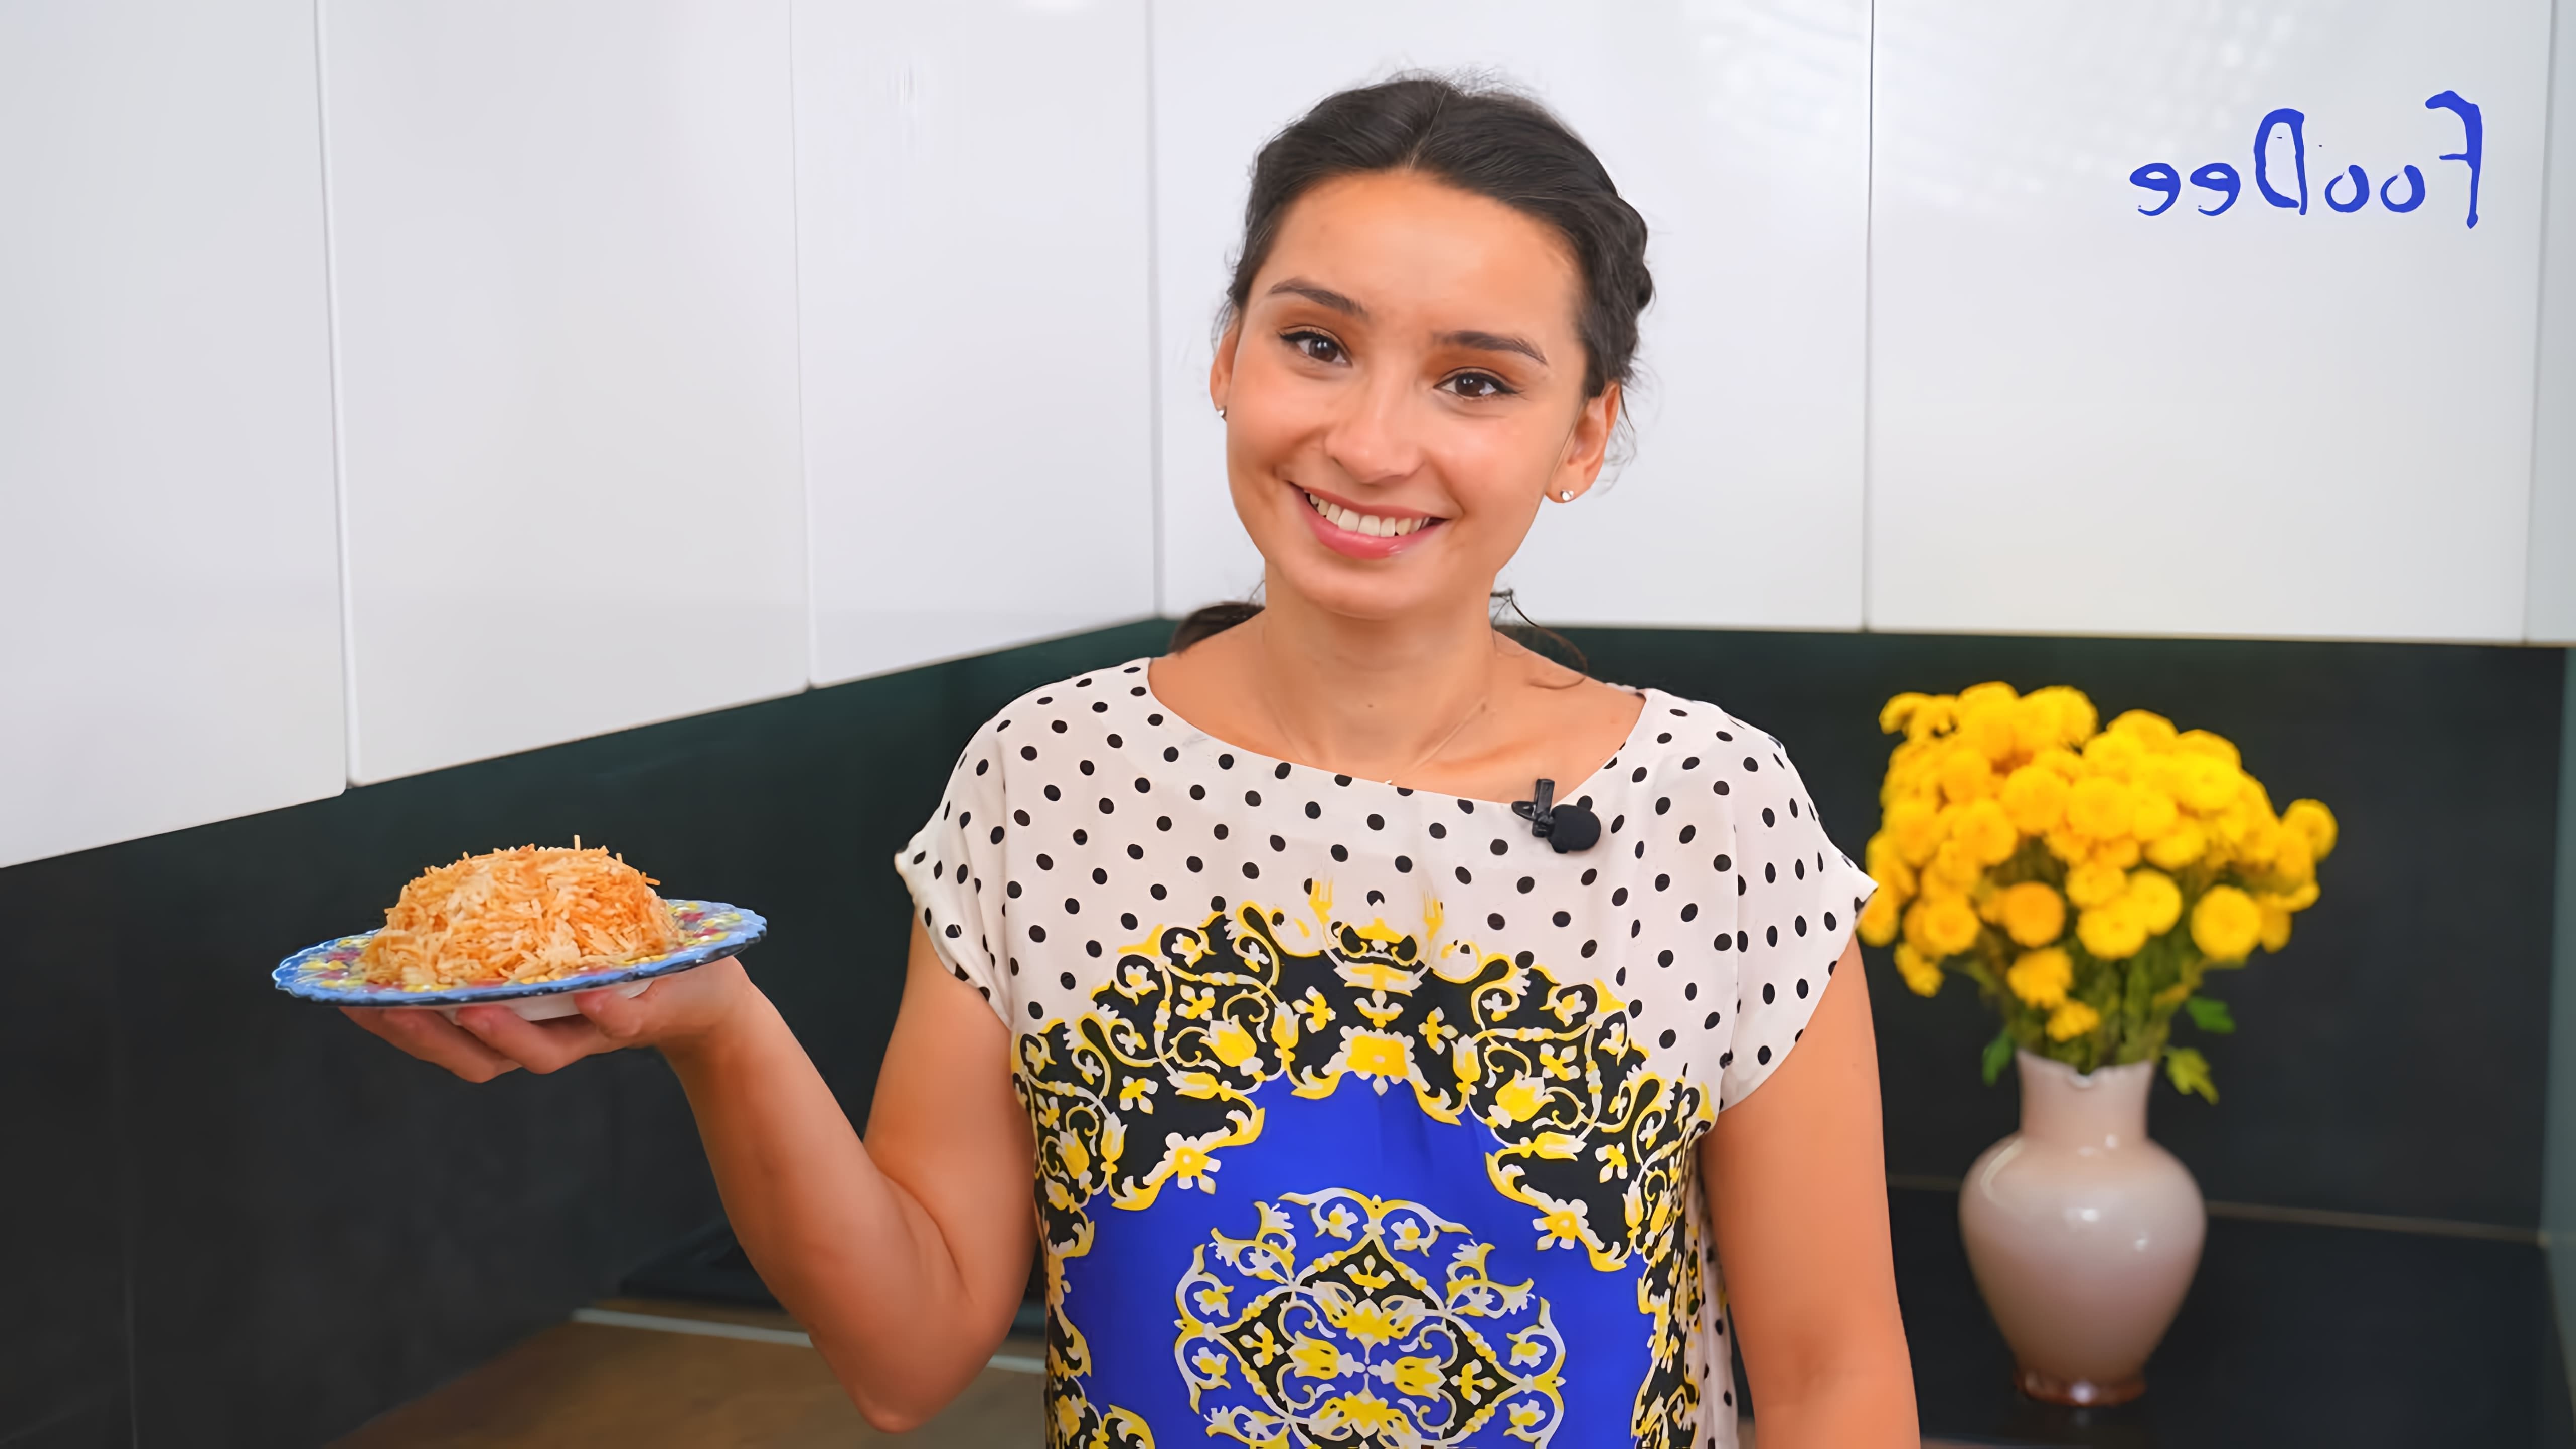 В этом видео демонстрируется рецепт приготовления турецкого риса с вермишелью